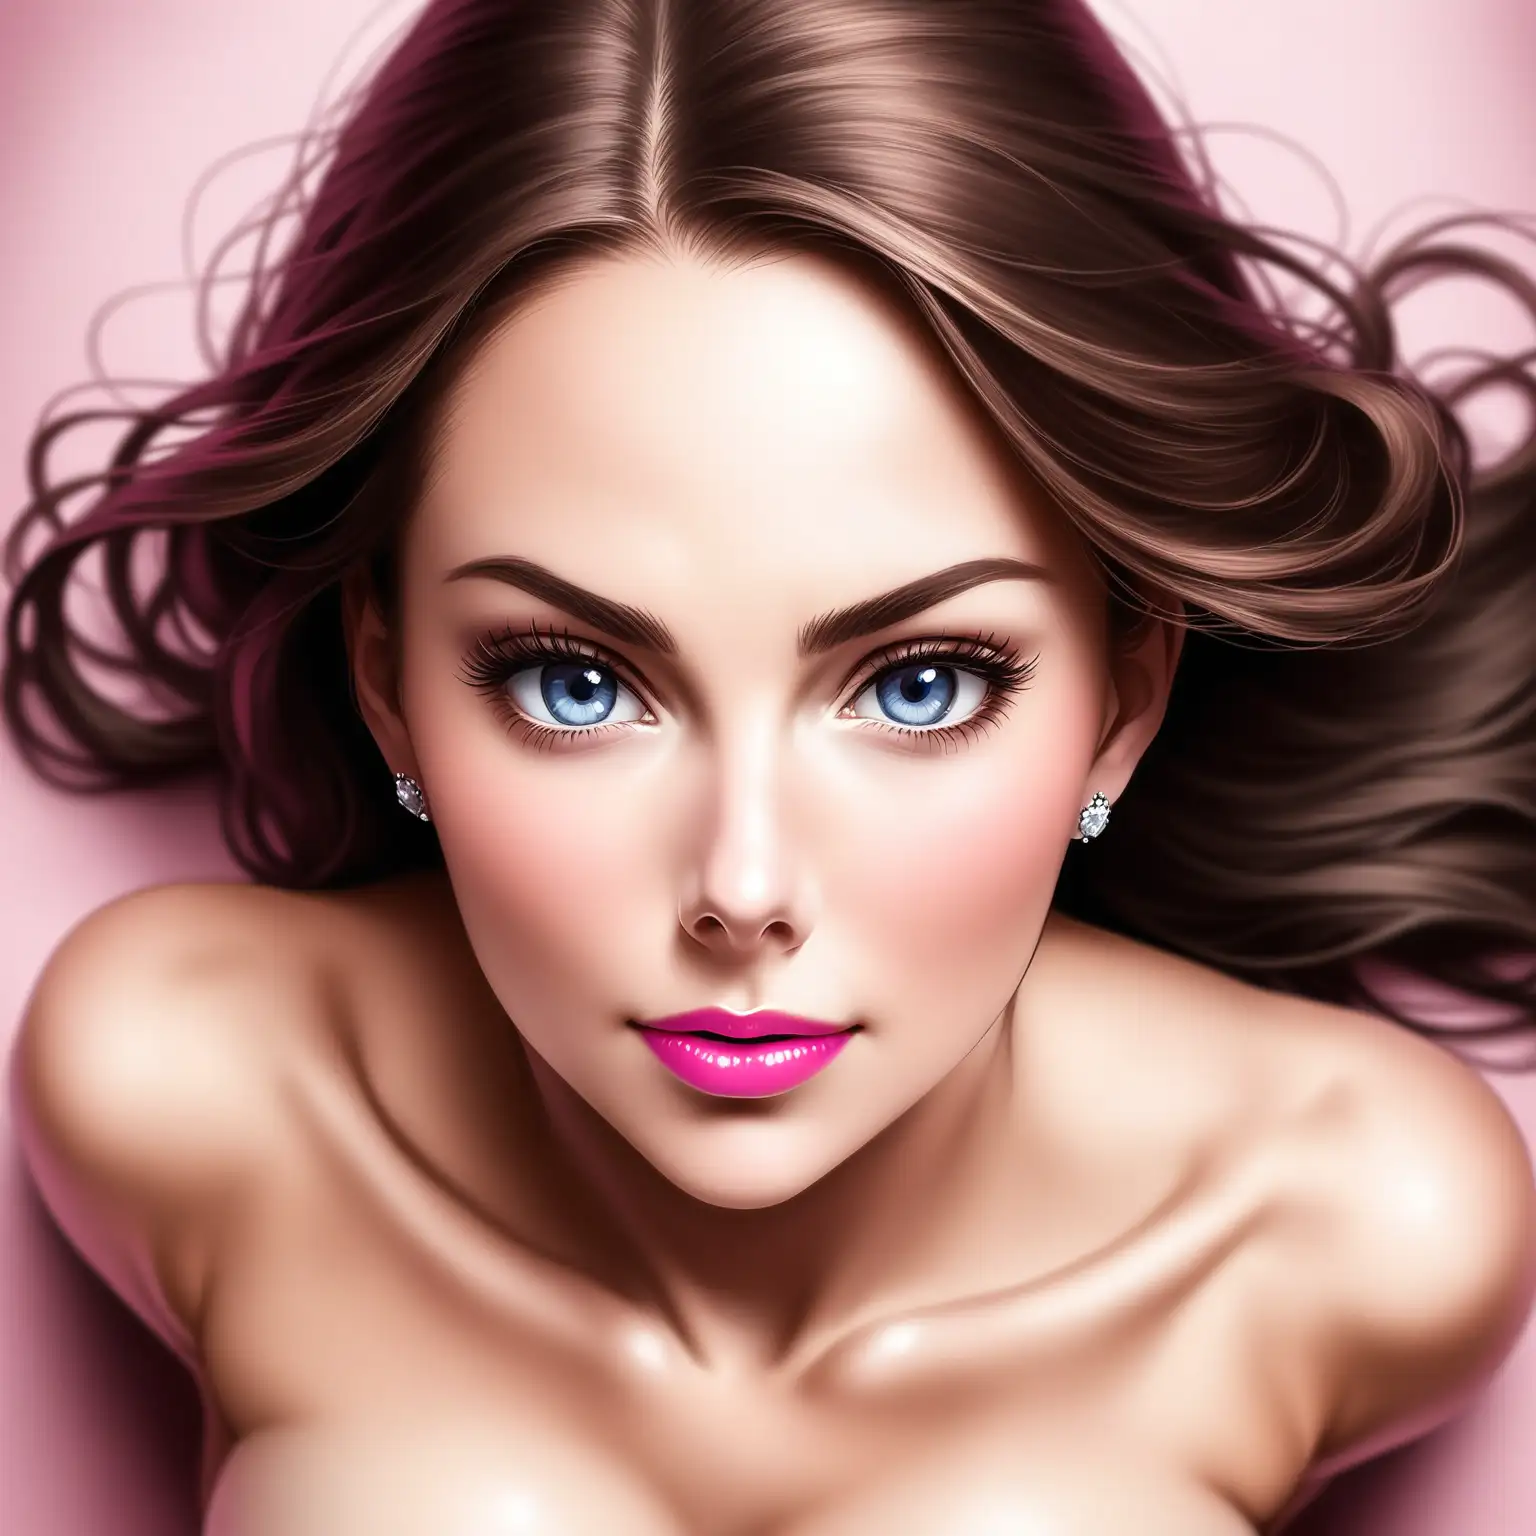 Vue dynamique en plongée de face, pose très très suggestive sexuelle aguicheuse Kate Middleton rouge à lèvres rose, regard soumis expression d'horreur,  nue